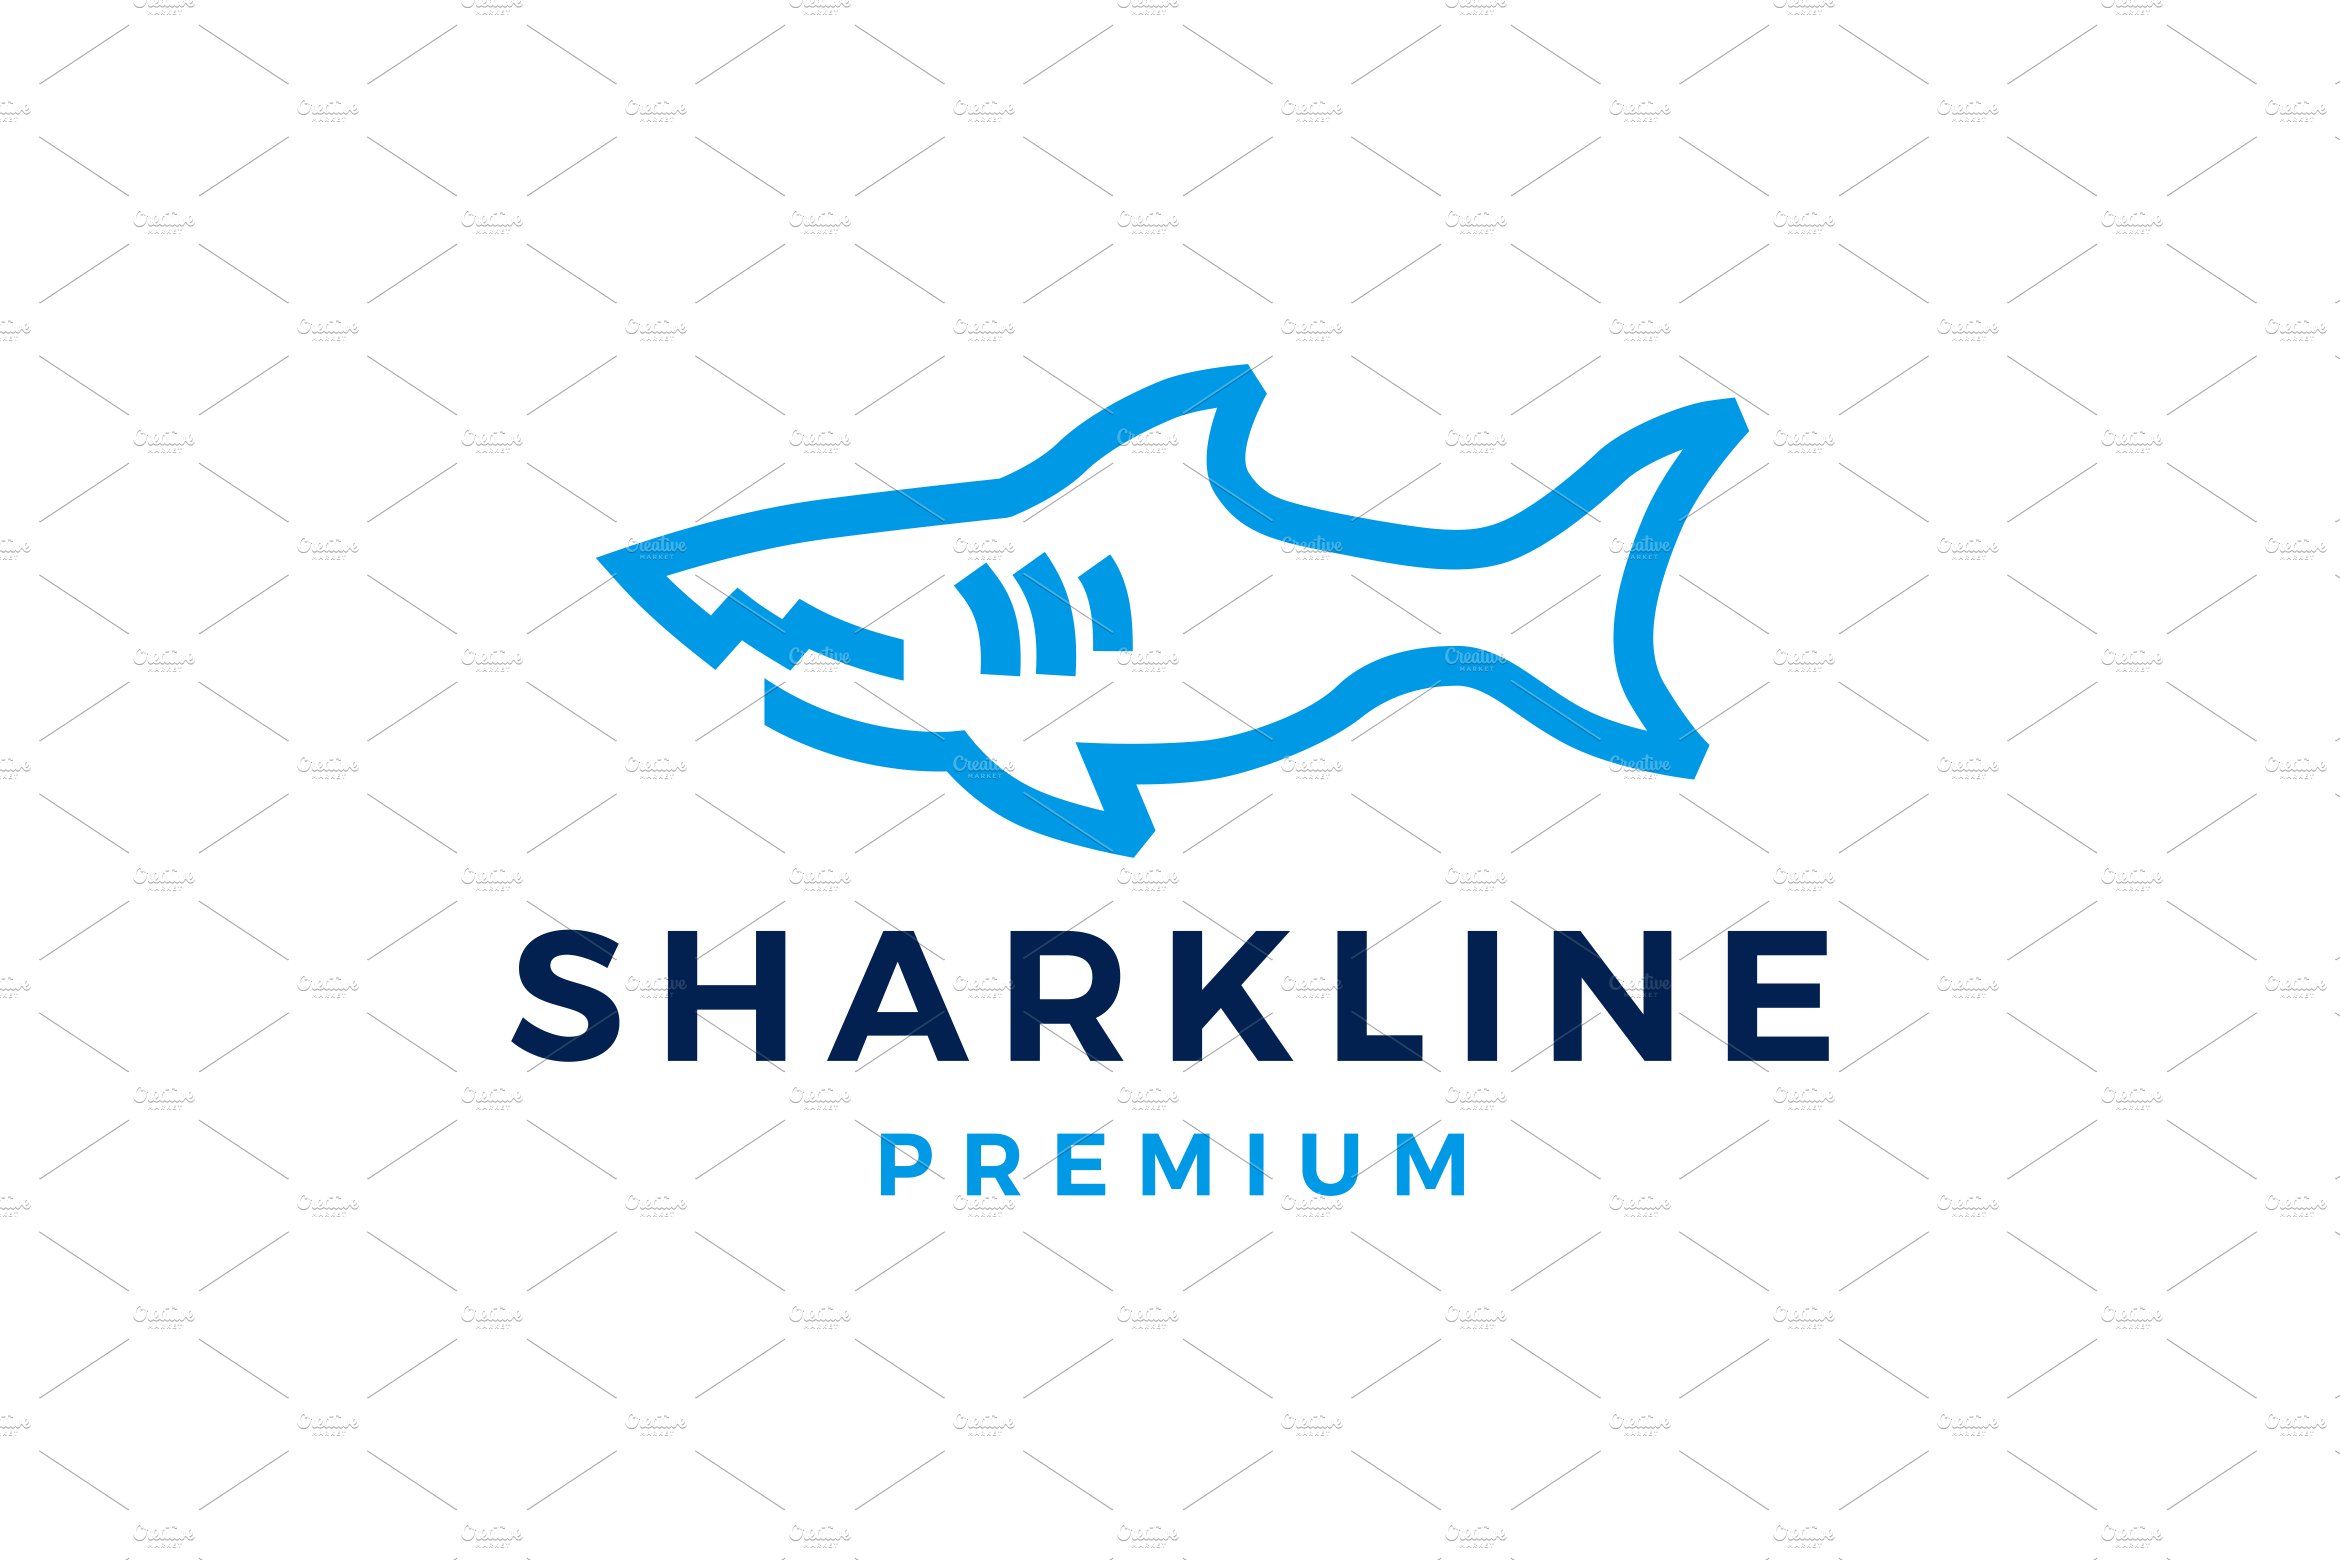 shark monoline line art logo vector cover image.